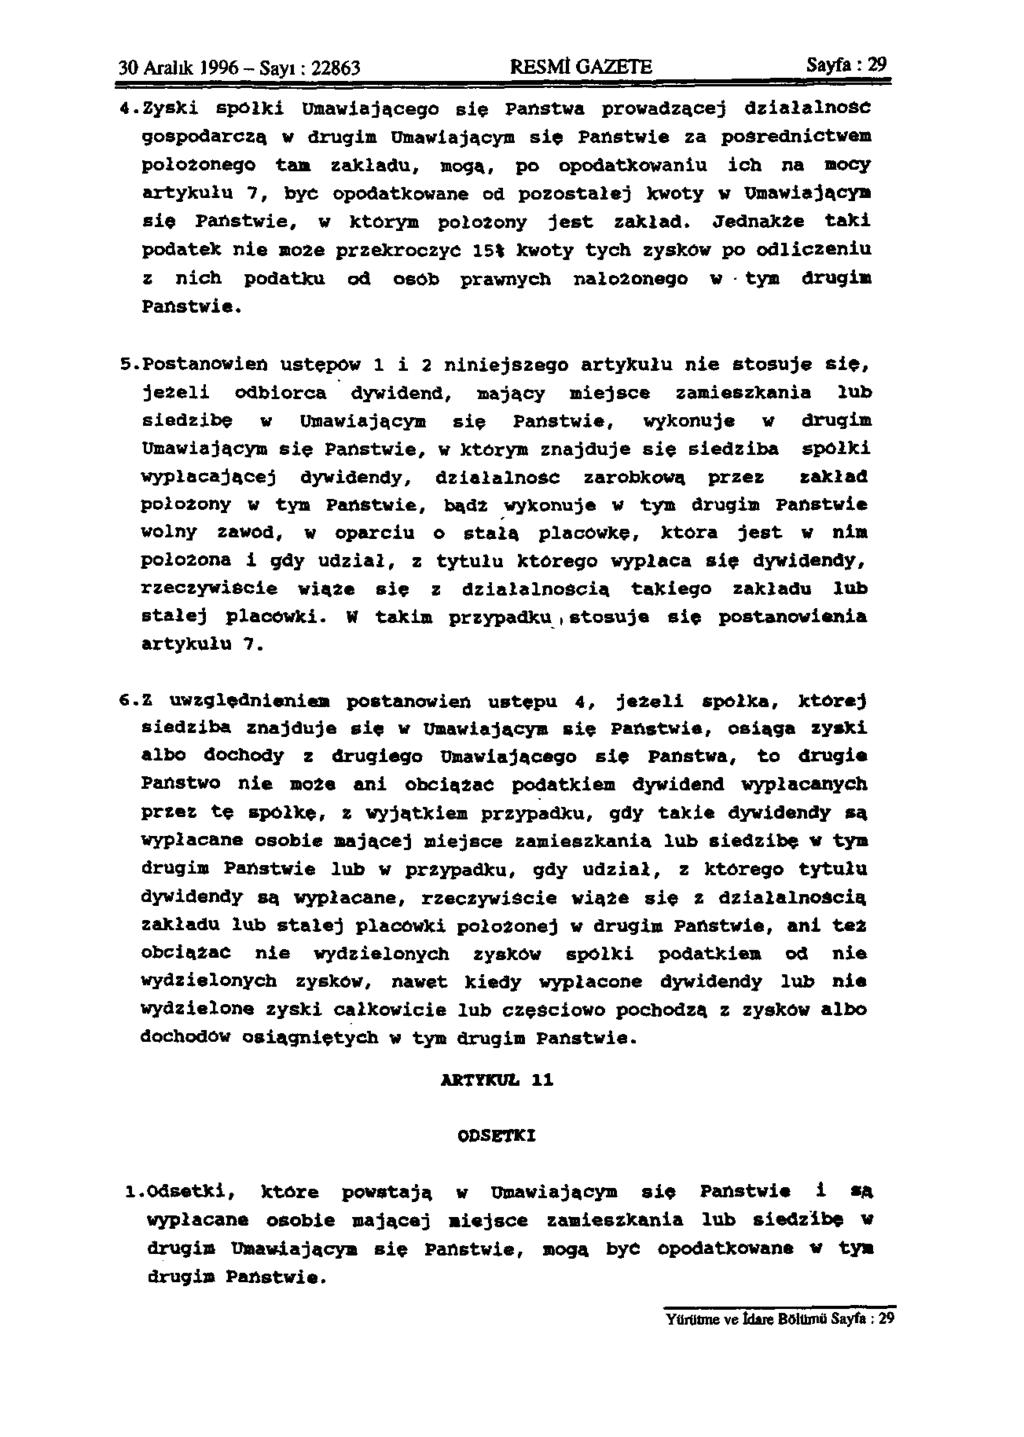 30 Aralık 1996 - Sayı: 22863 RESMİ GAZETE Sayfa: 29 4. Zyski spolki Umawiaja.